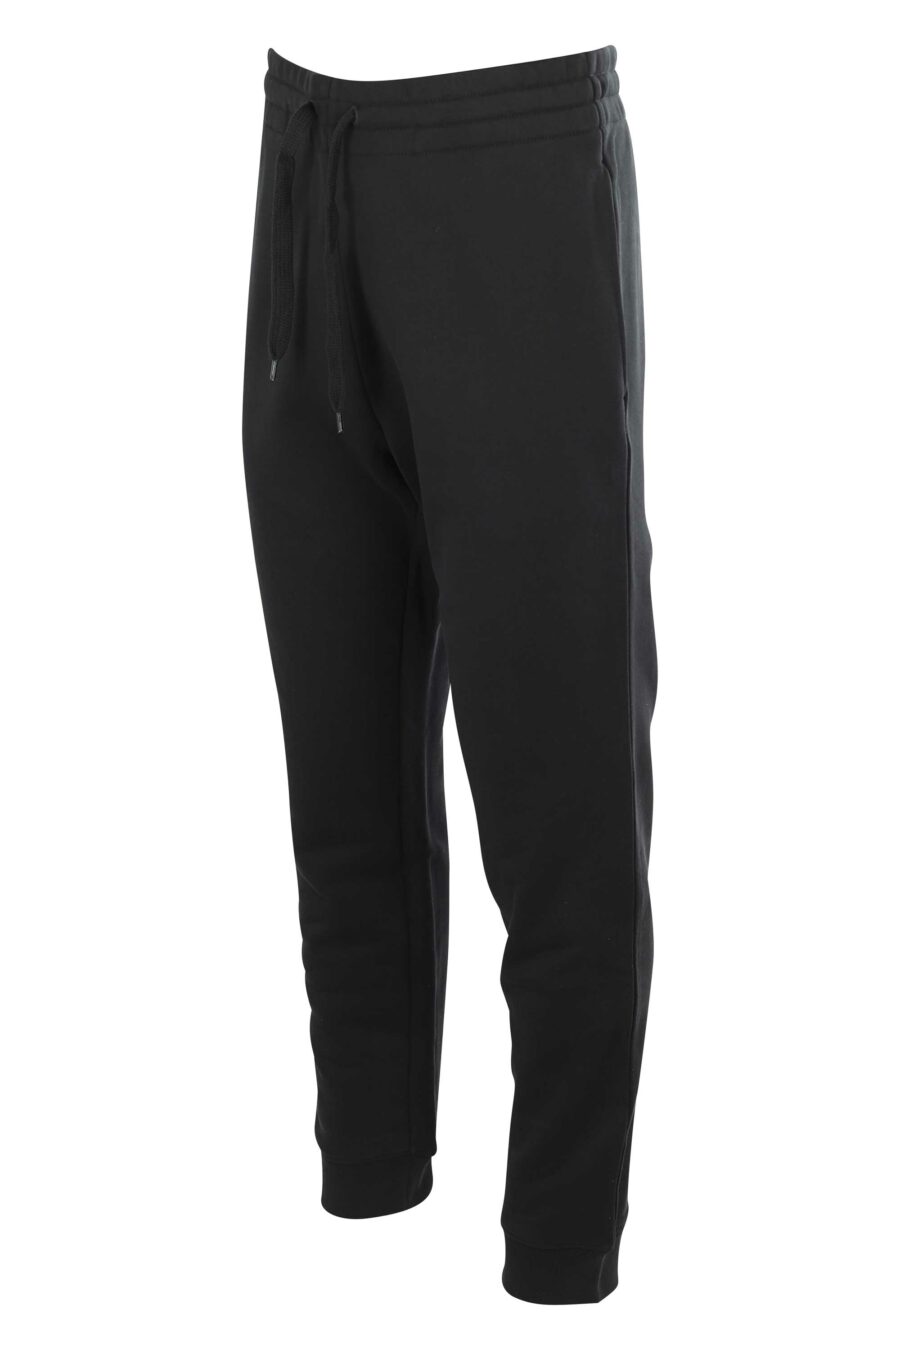 Moschino - Pantalón de chándal negro con logo en bolsillo - BLS Fashion